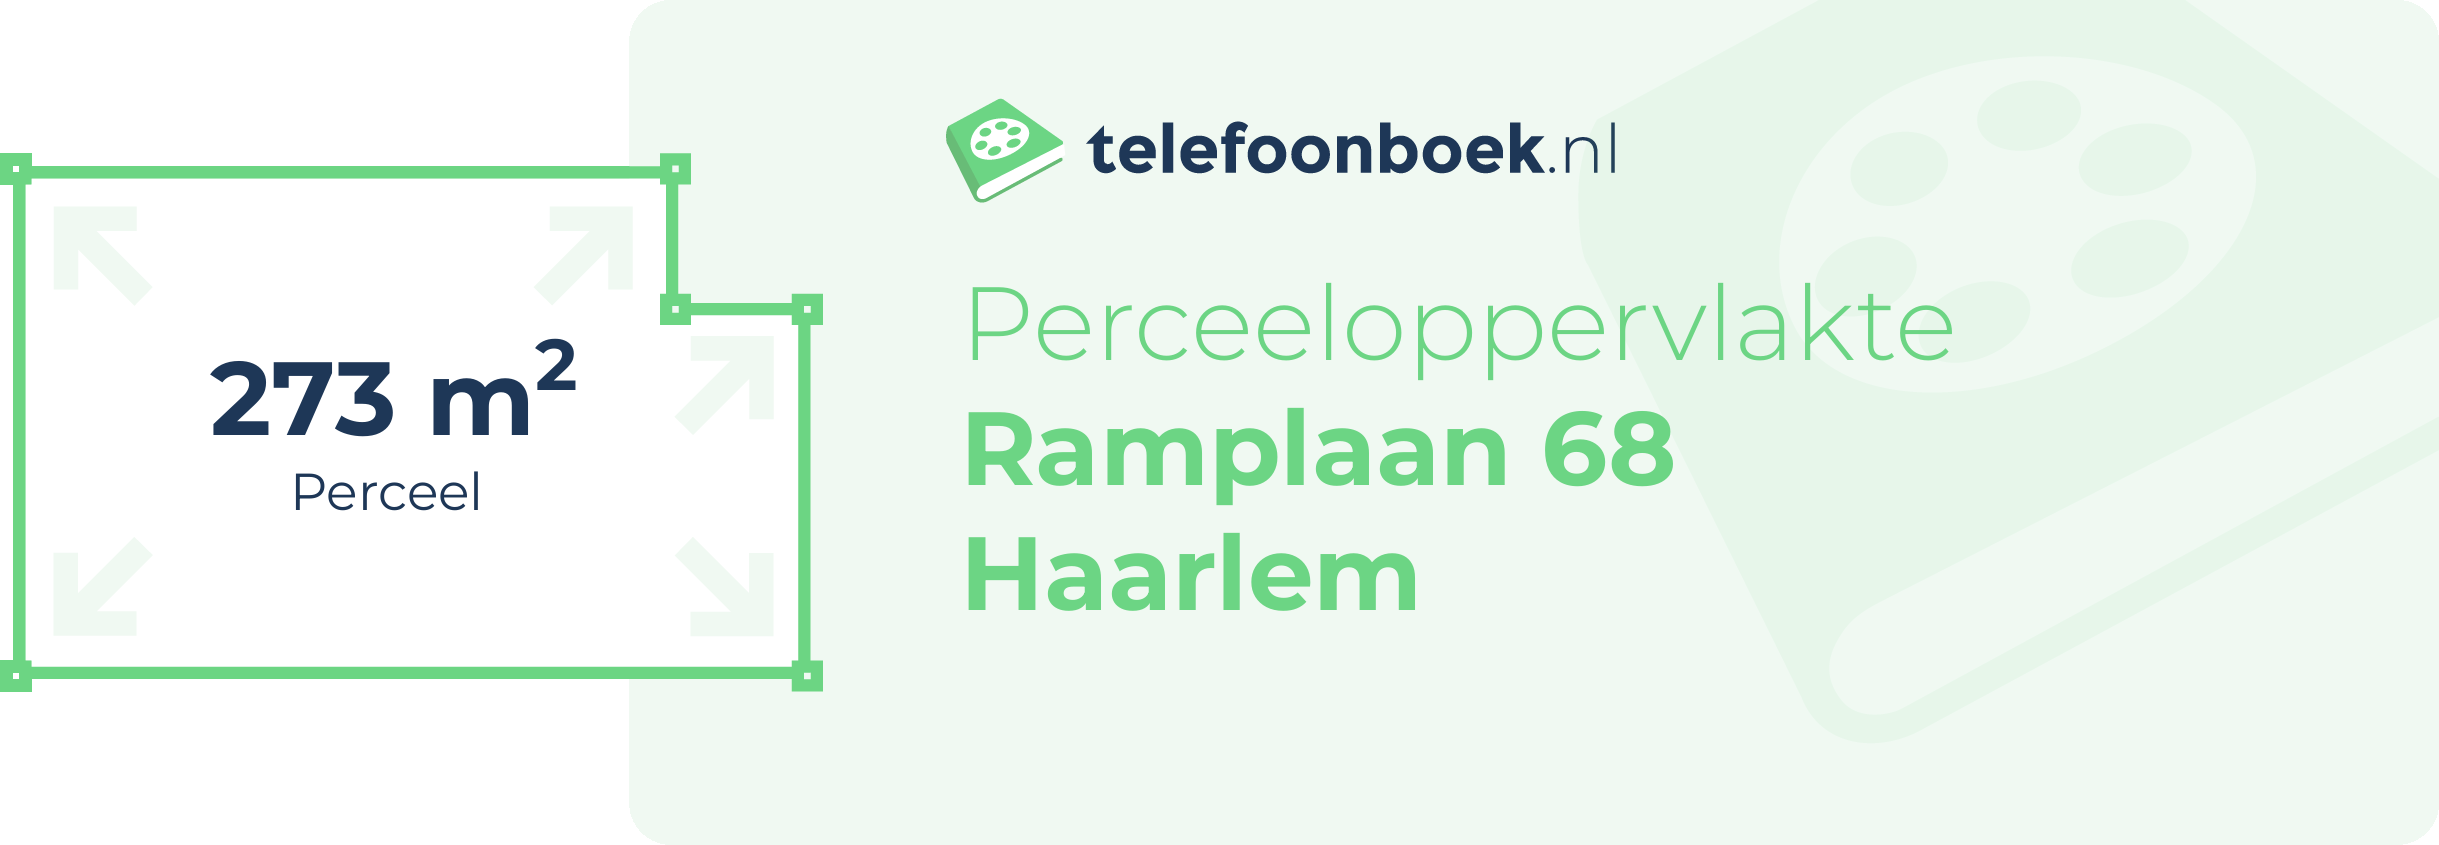 Perceeloppervlakte Ramplaan 68 Haarlem